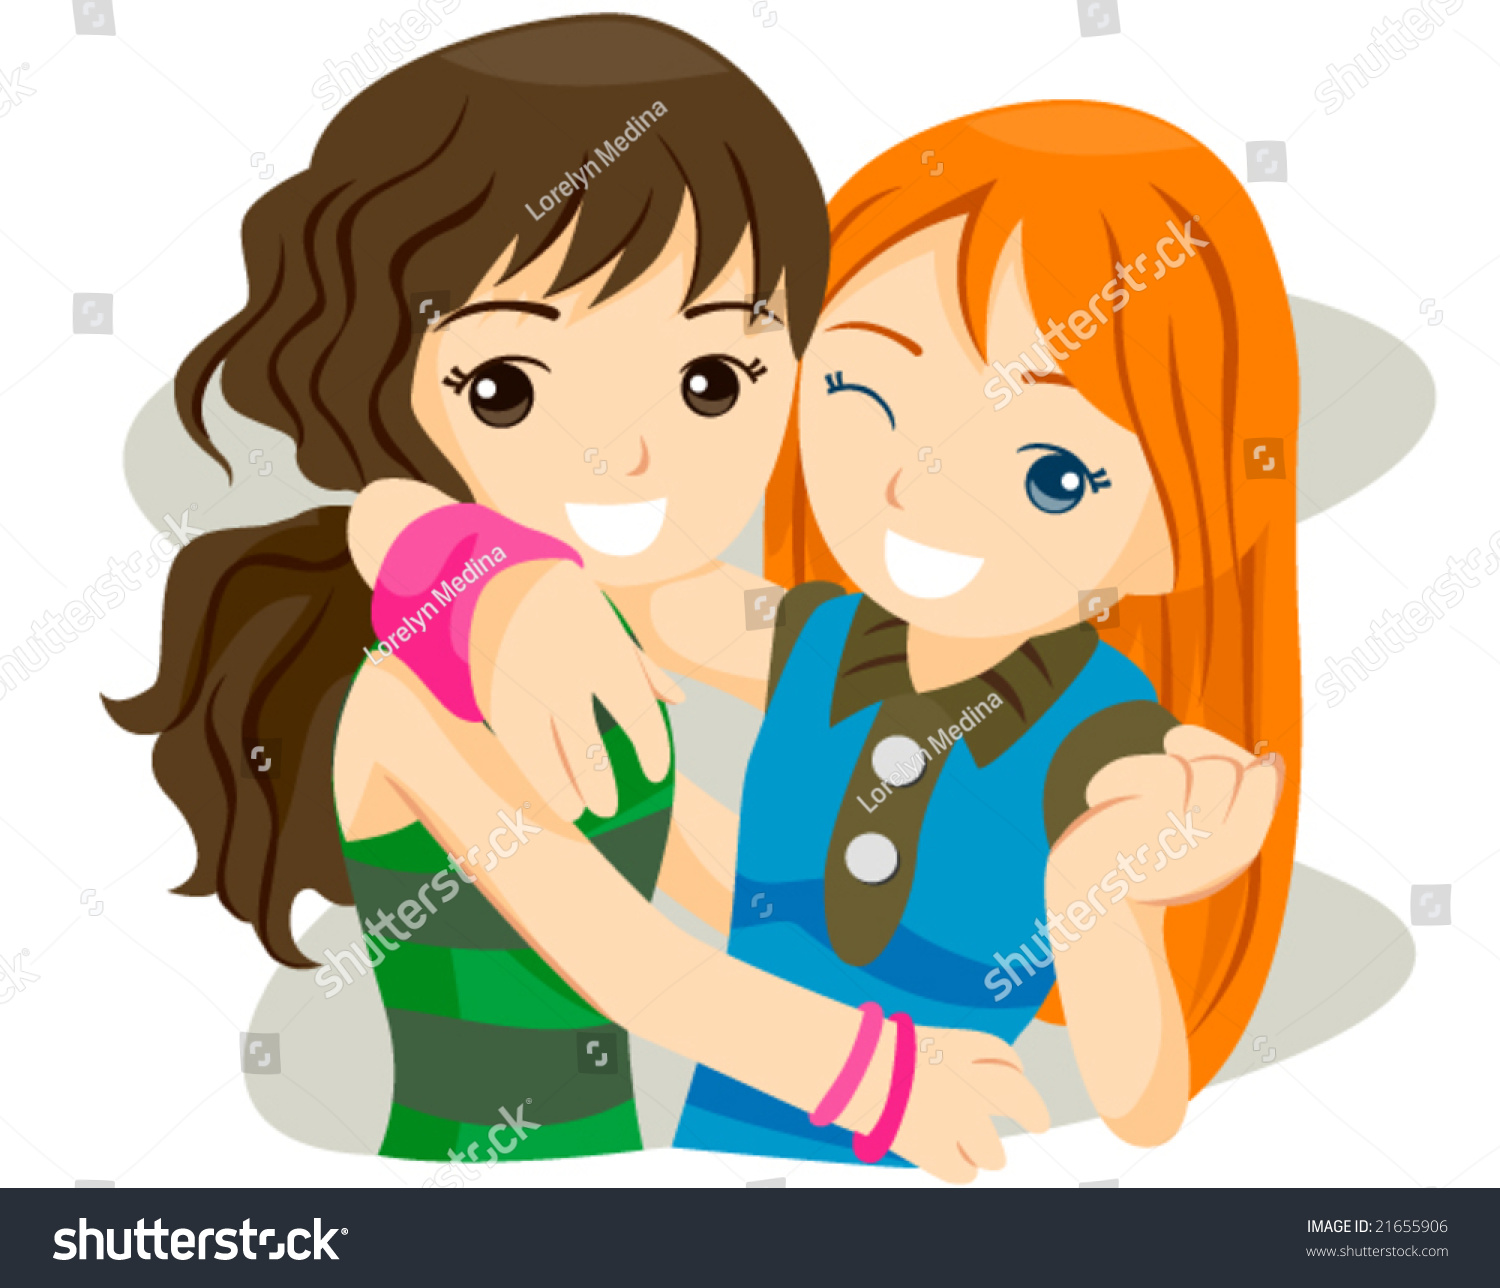 Girlfriends Vector Stock Vector 21655906 - Shutterstock